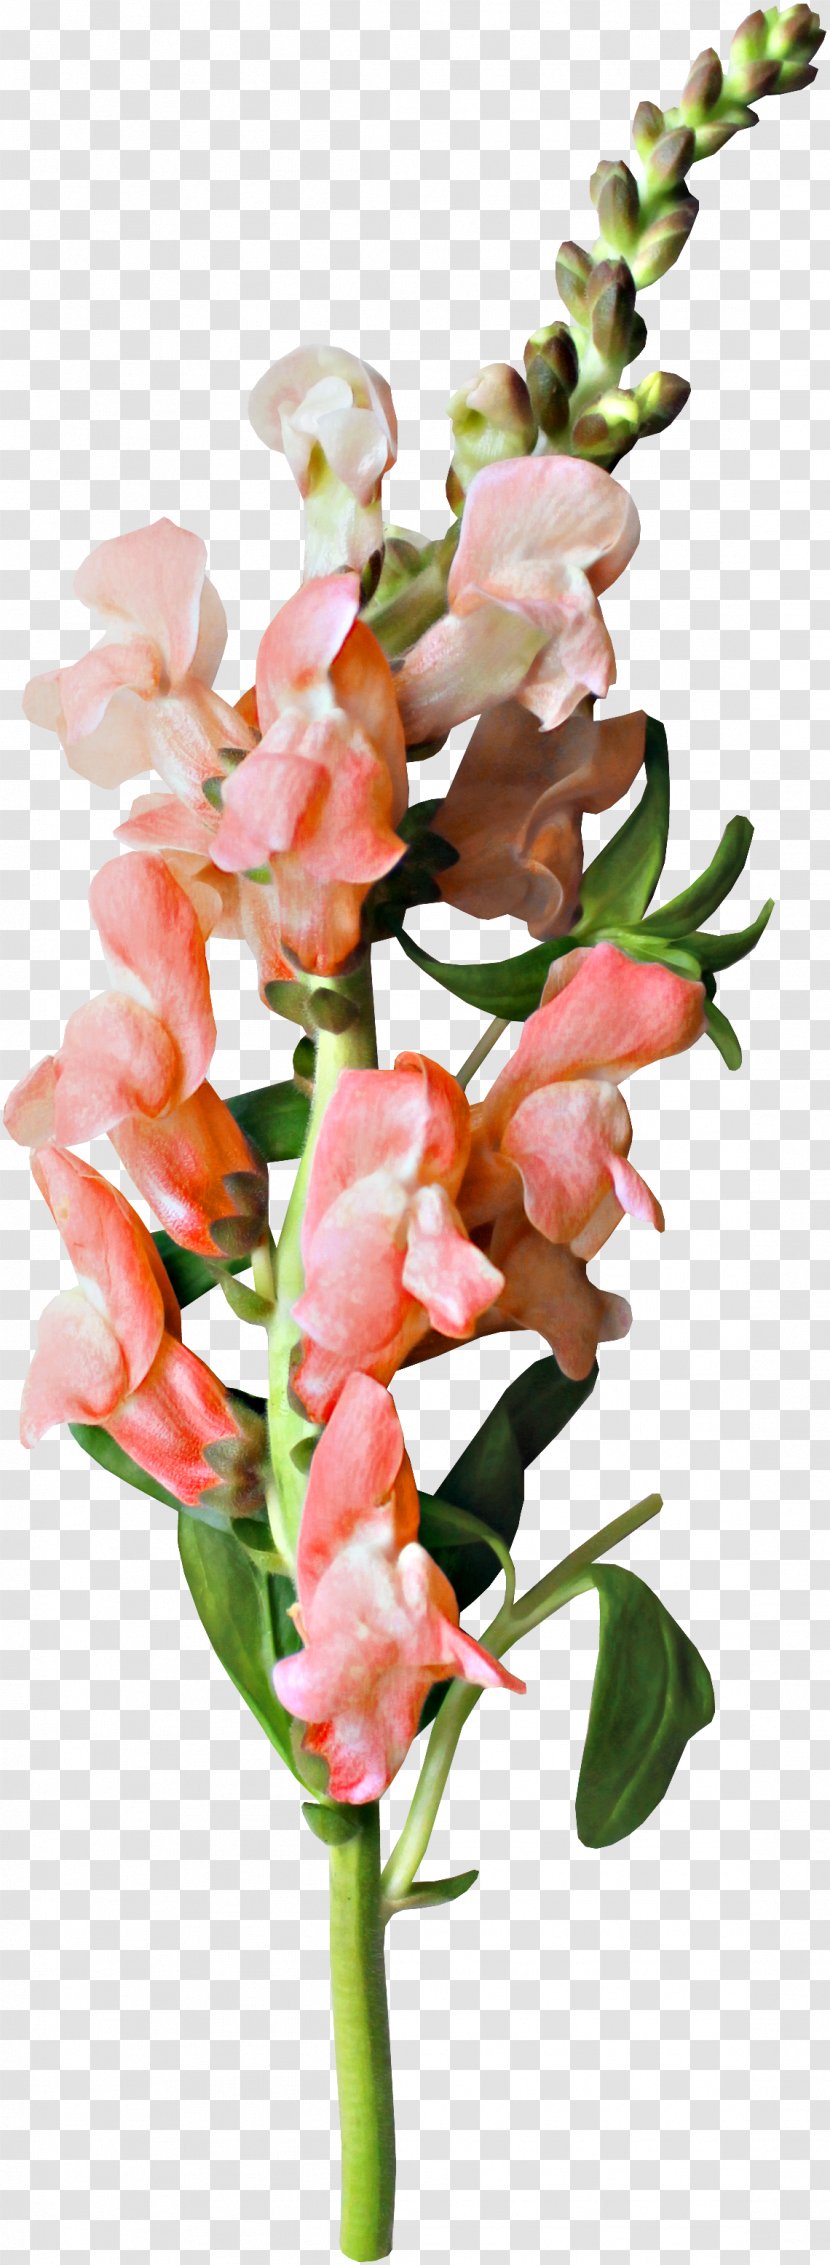 Flower Clip Art - Floral Design - Beautiful Bouquet Of Fresh Flowers Transparent PNG